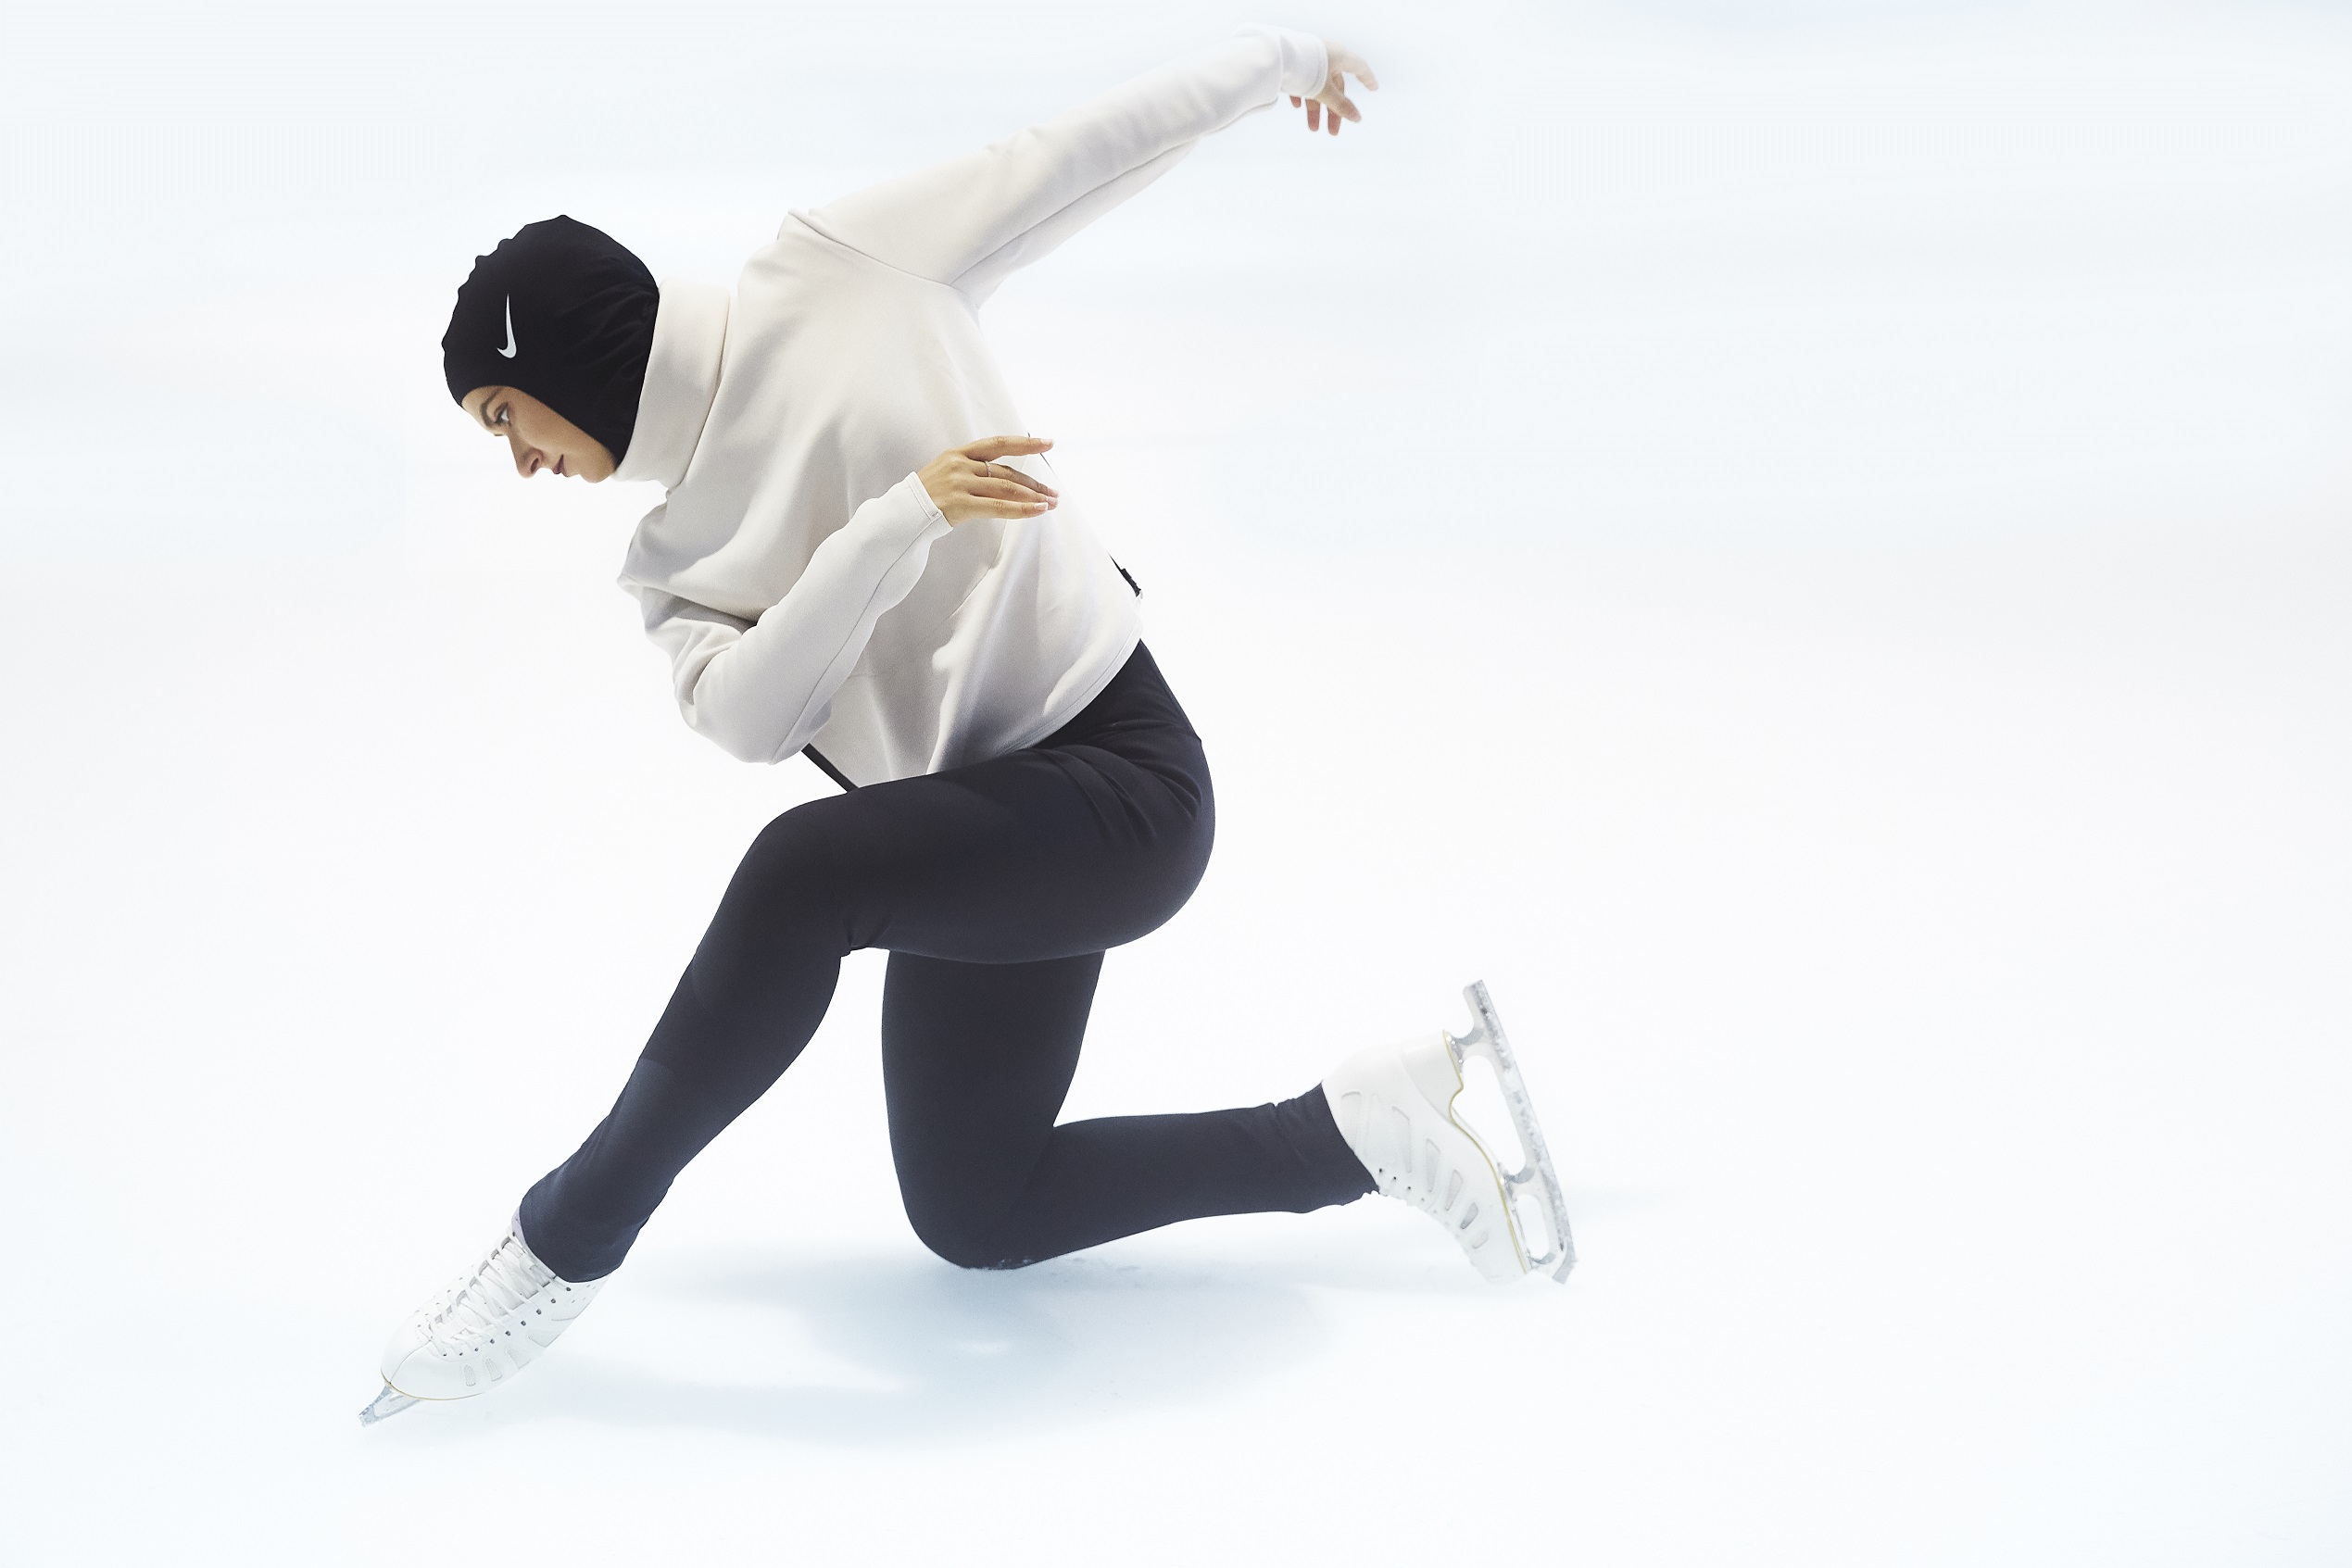 المتزلجة زهرة لاري تشارك في التصفيات المؤهلة للألعاب الأولمبية الشتوية